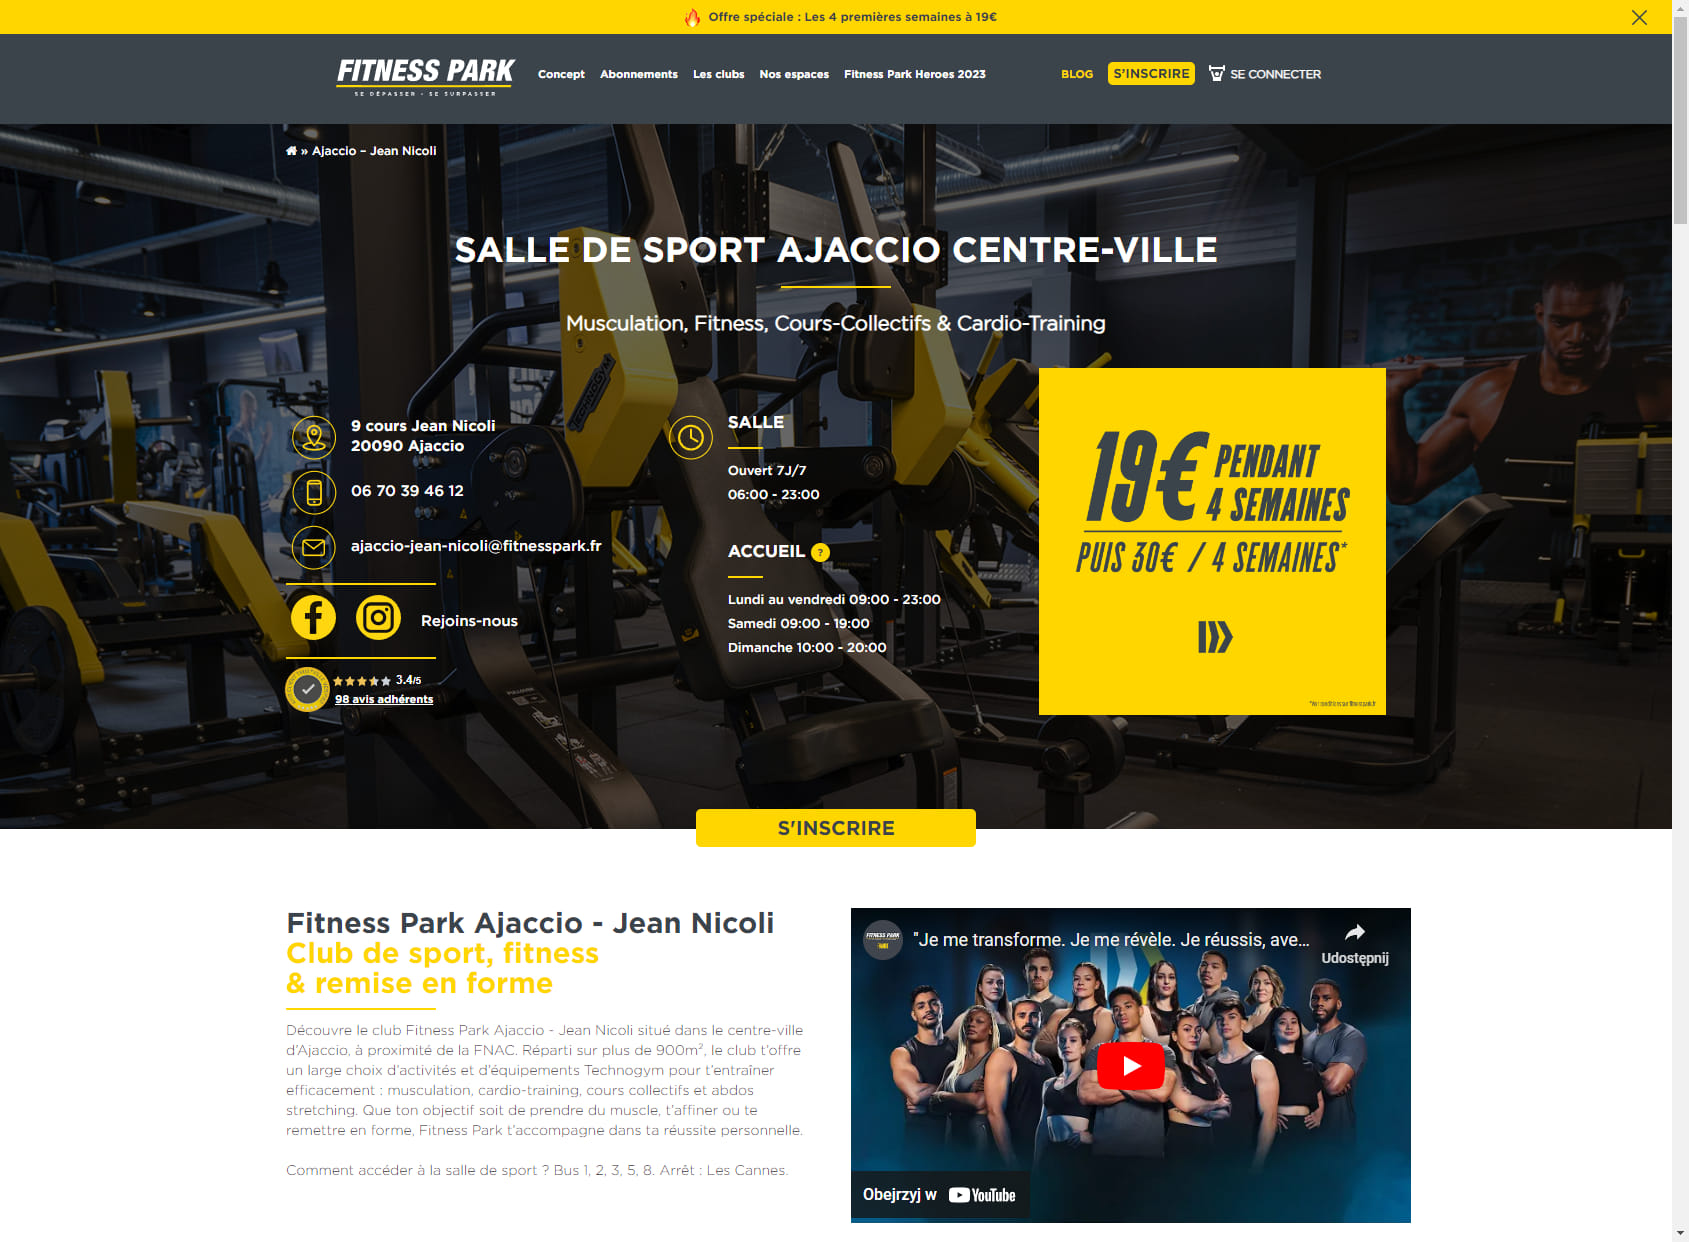 Salle de sport Ajaccio - Jean Nicoli - Fitness Park